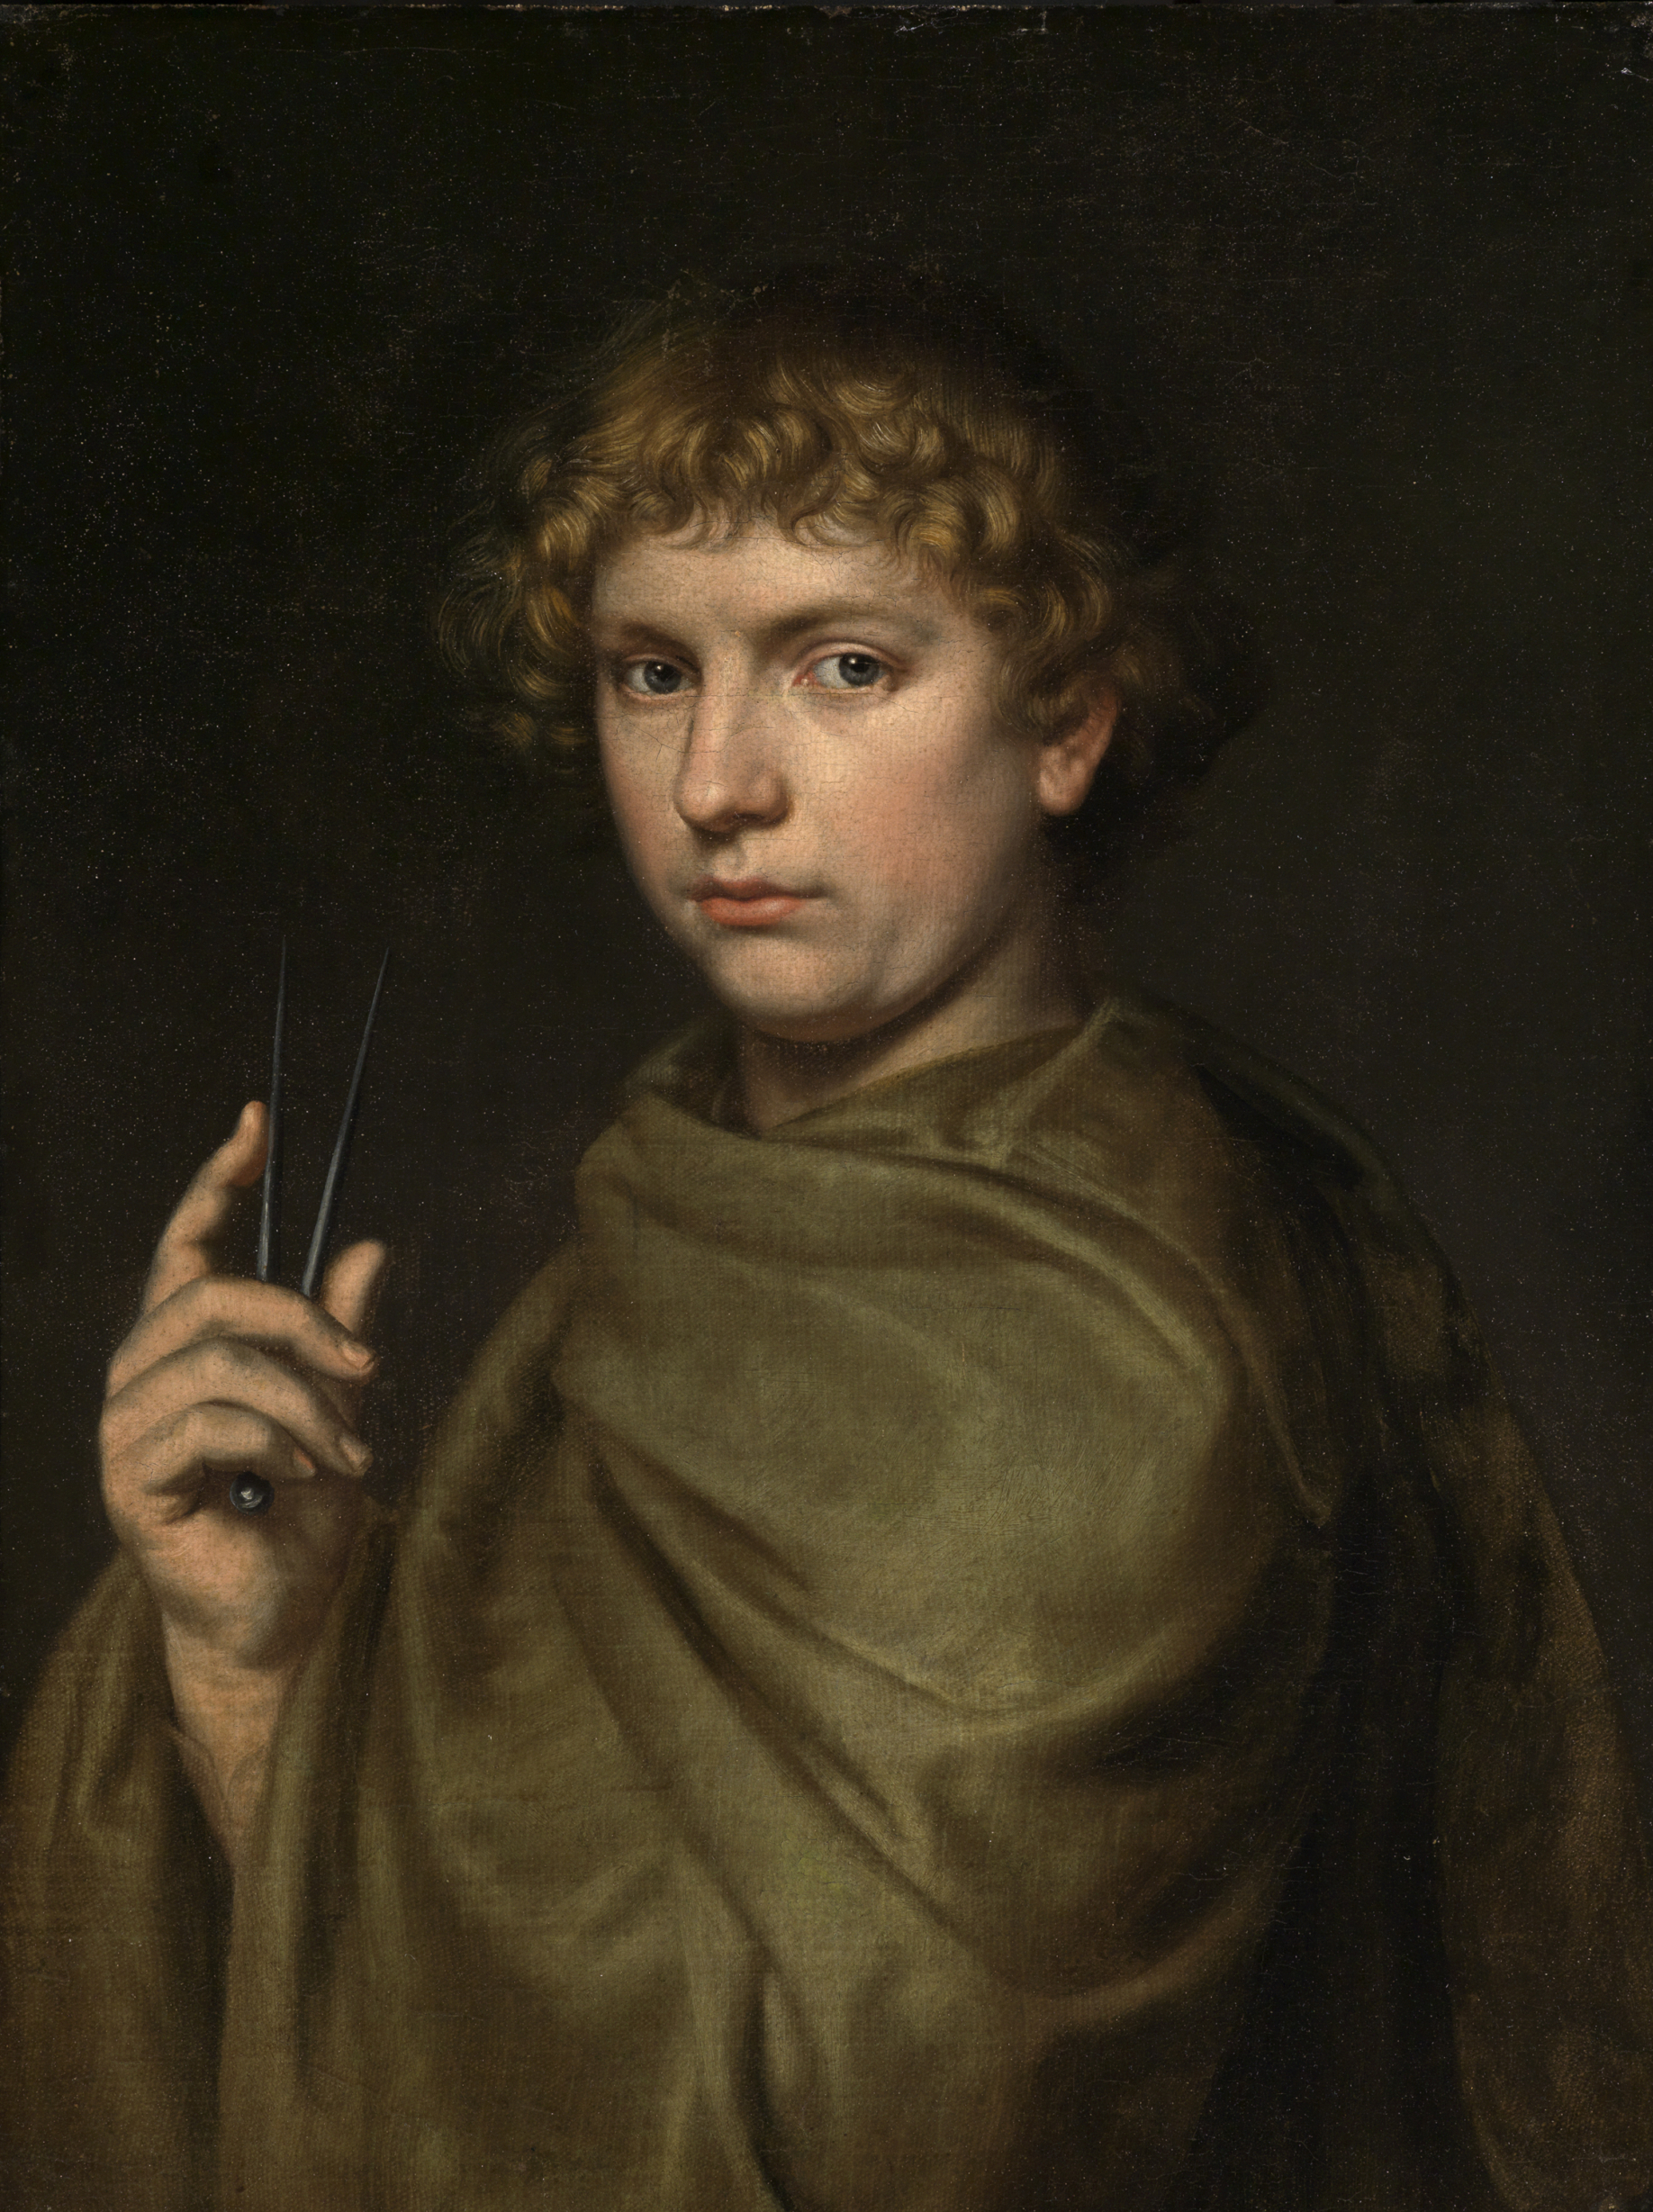 Das Werk zeigt einen jungen Architekten in einem grünen Mantel und mit lockigem, kurzen Haar. In der Hand hält er vermutlich einen Zirkel.